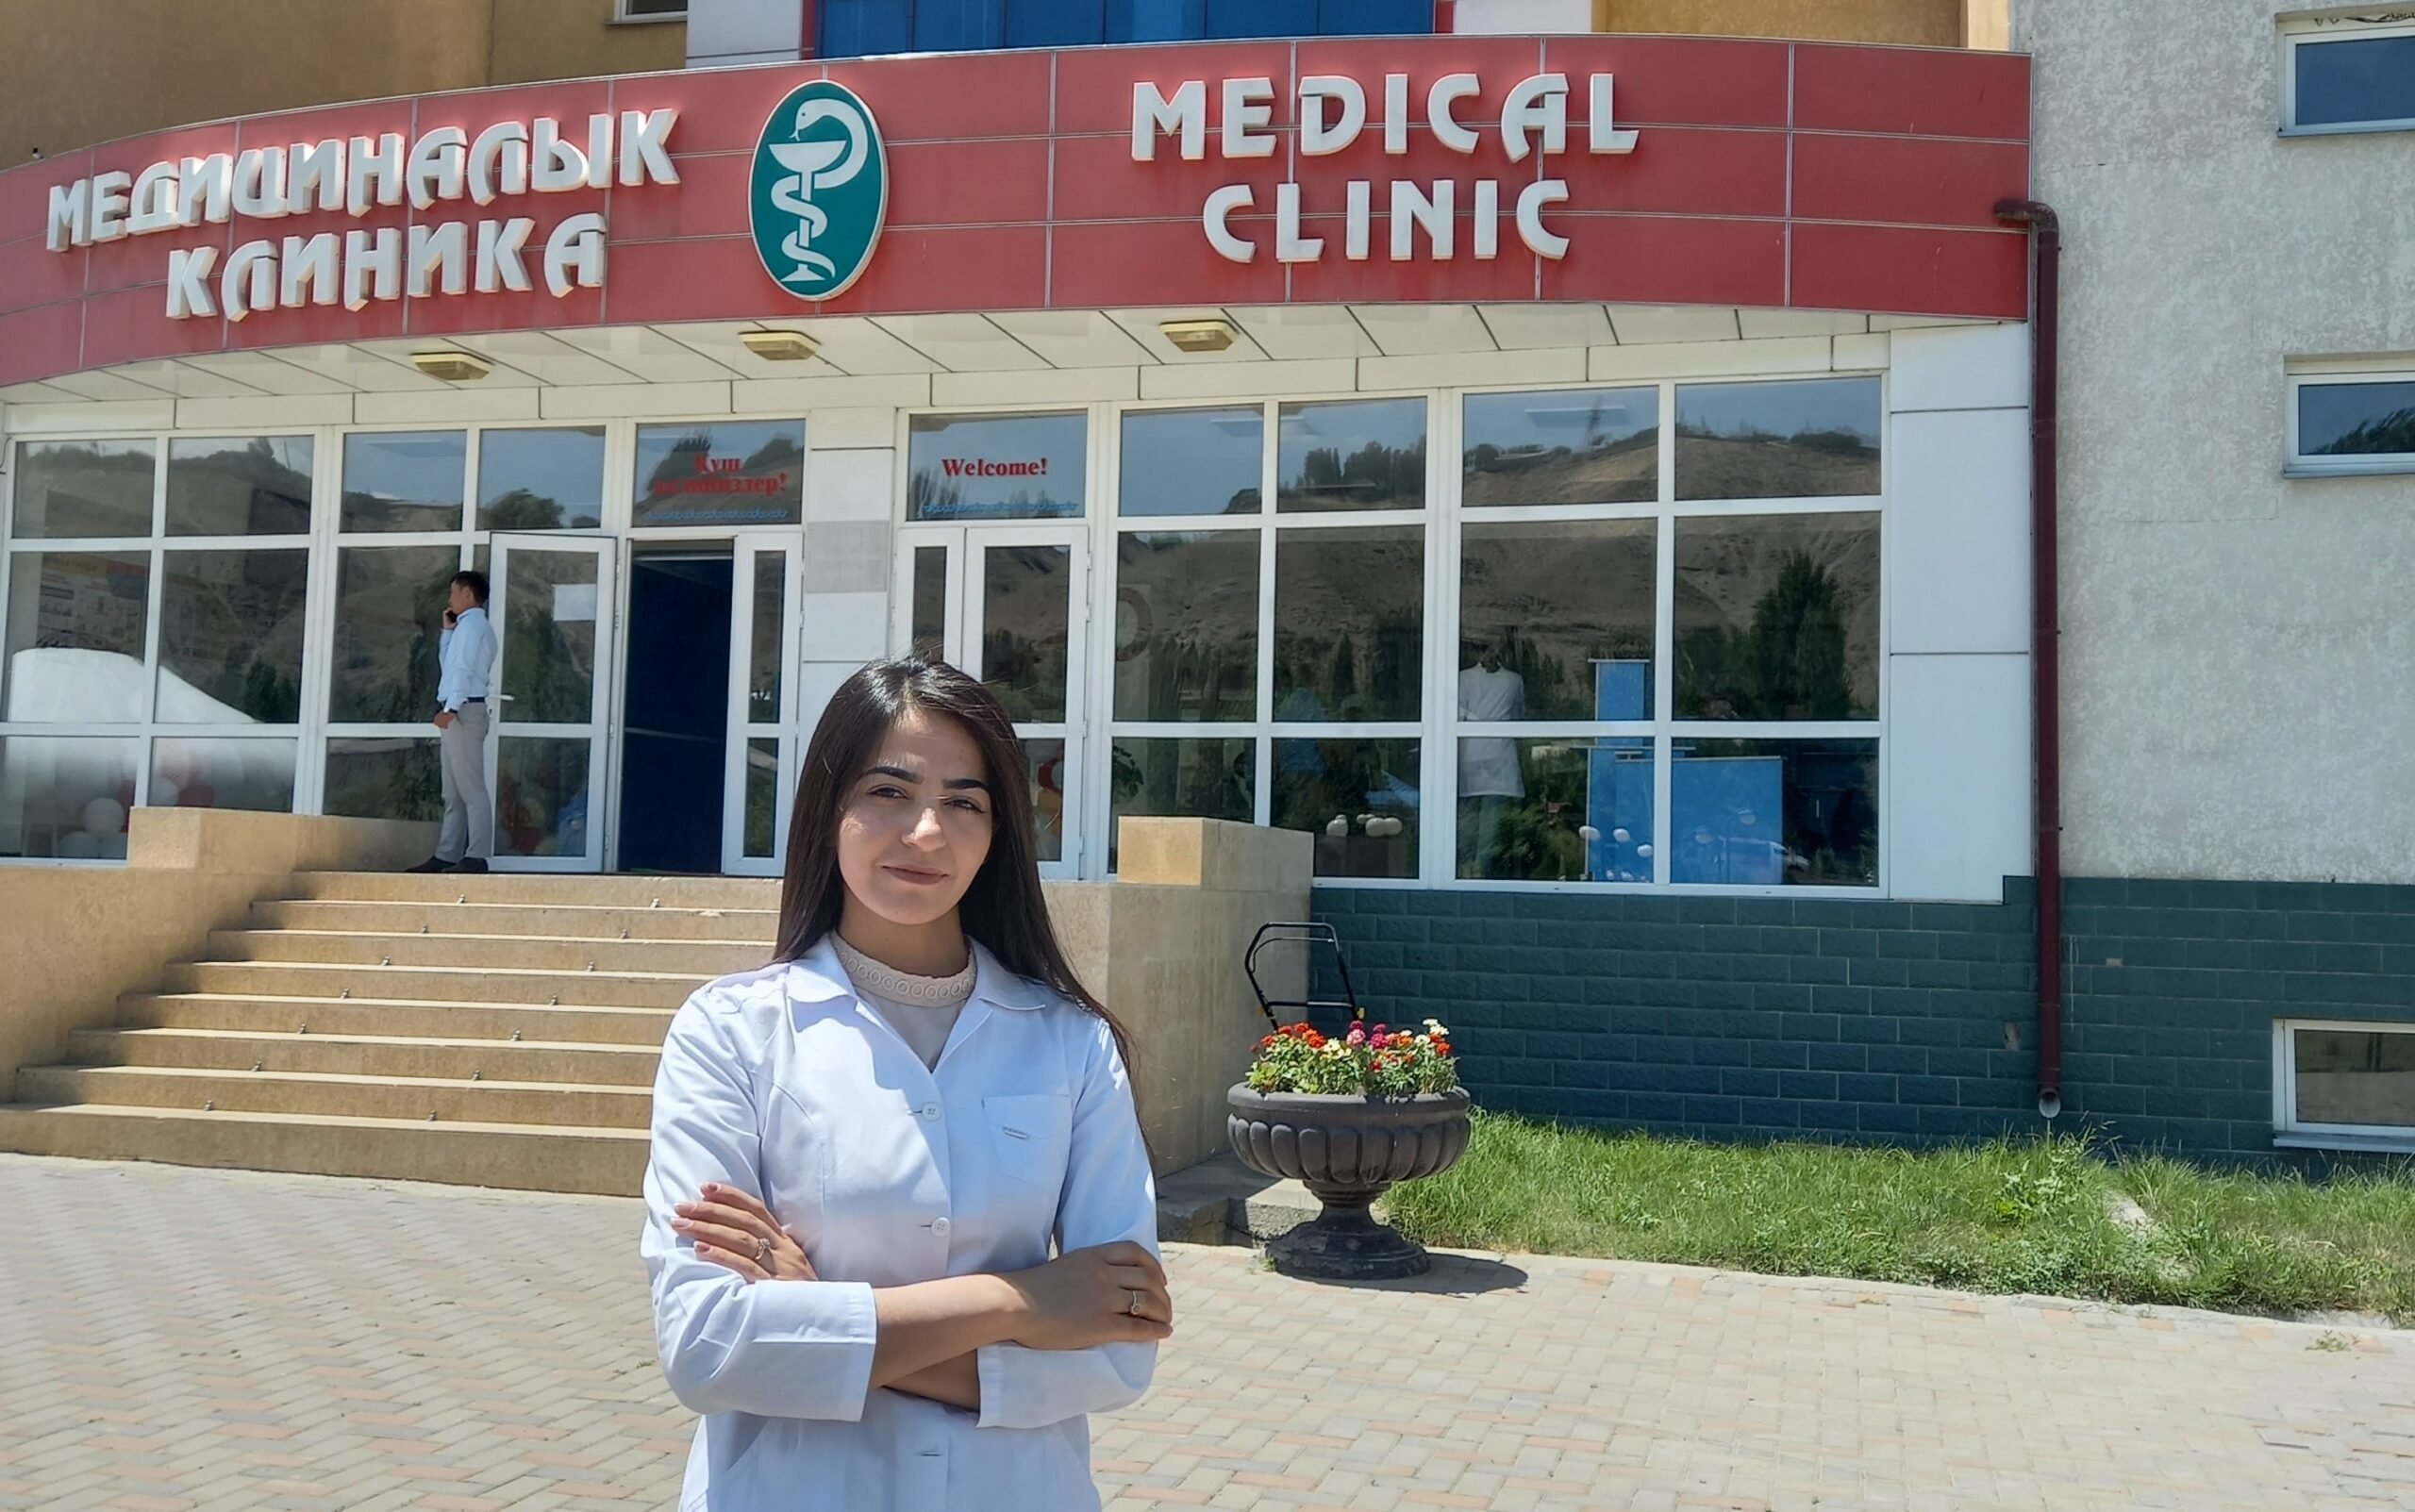 Malikha, Afghan refugee, studies at medical university in Kyrgyzstan thanks to DAFI scholarship